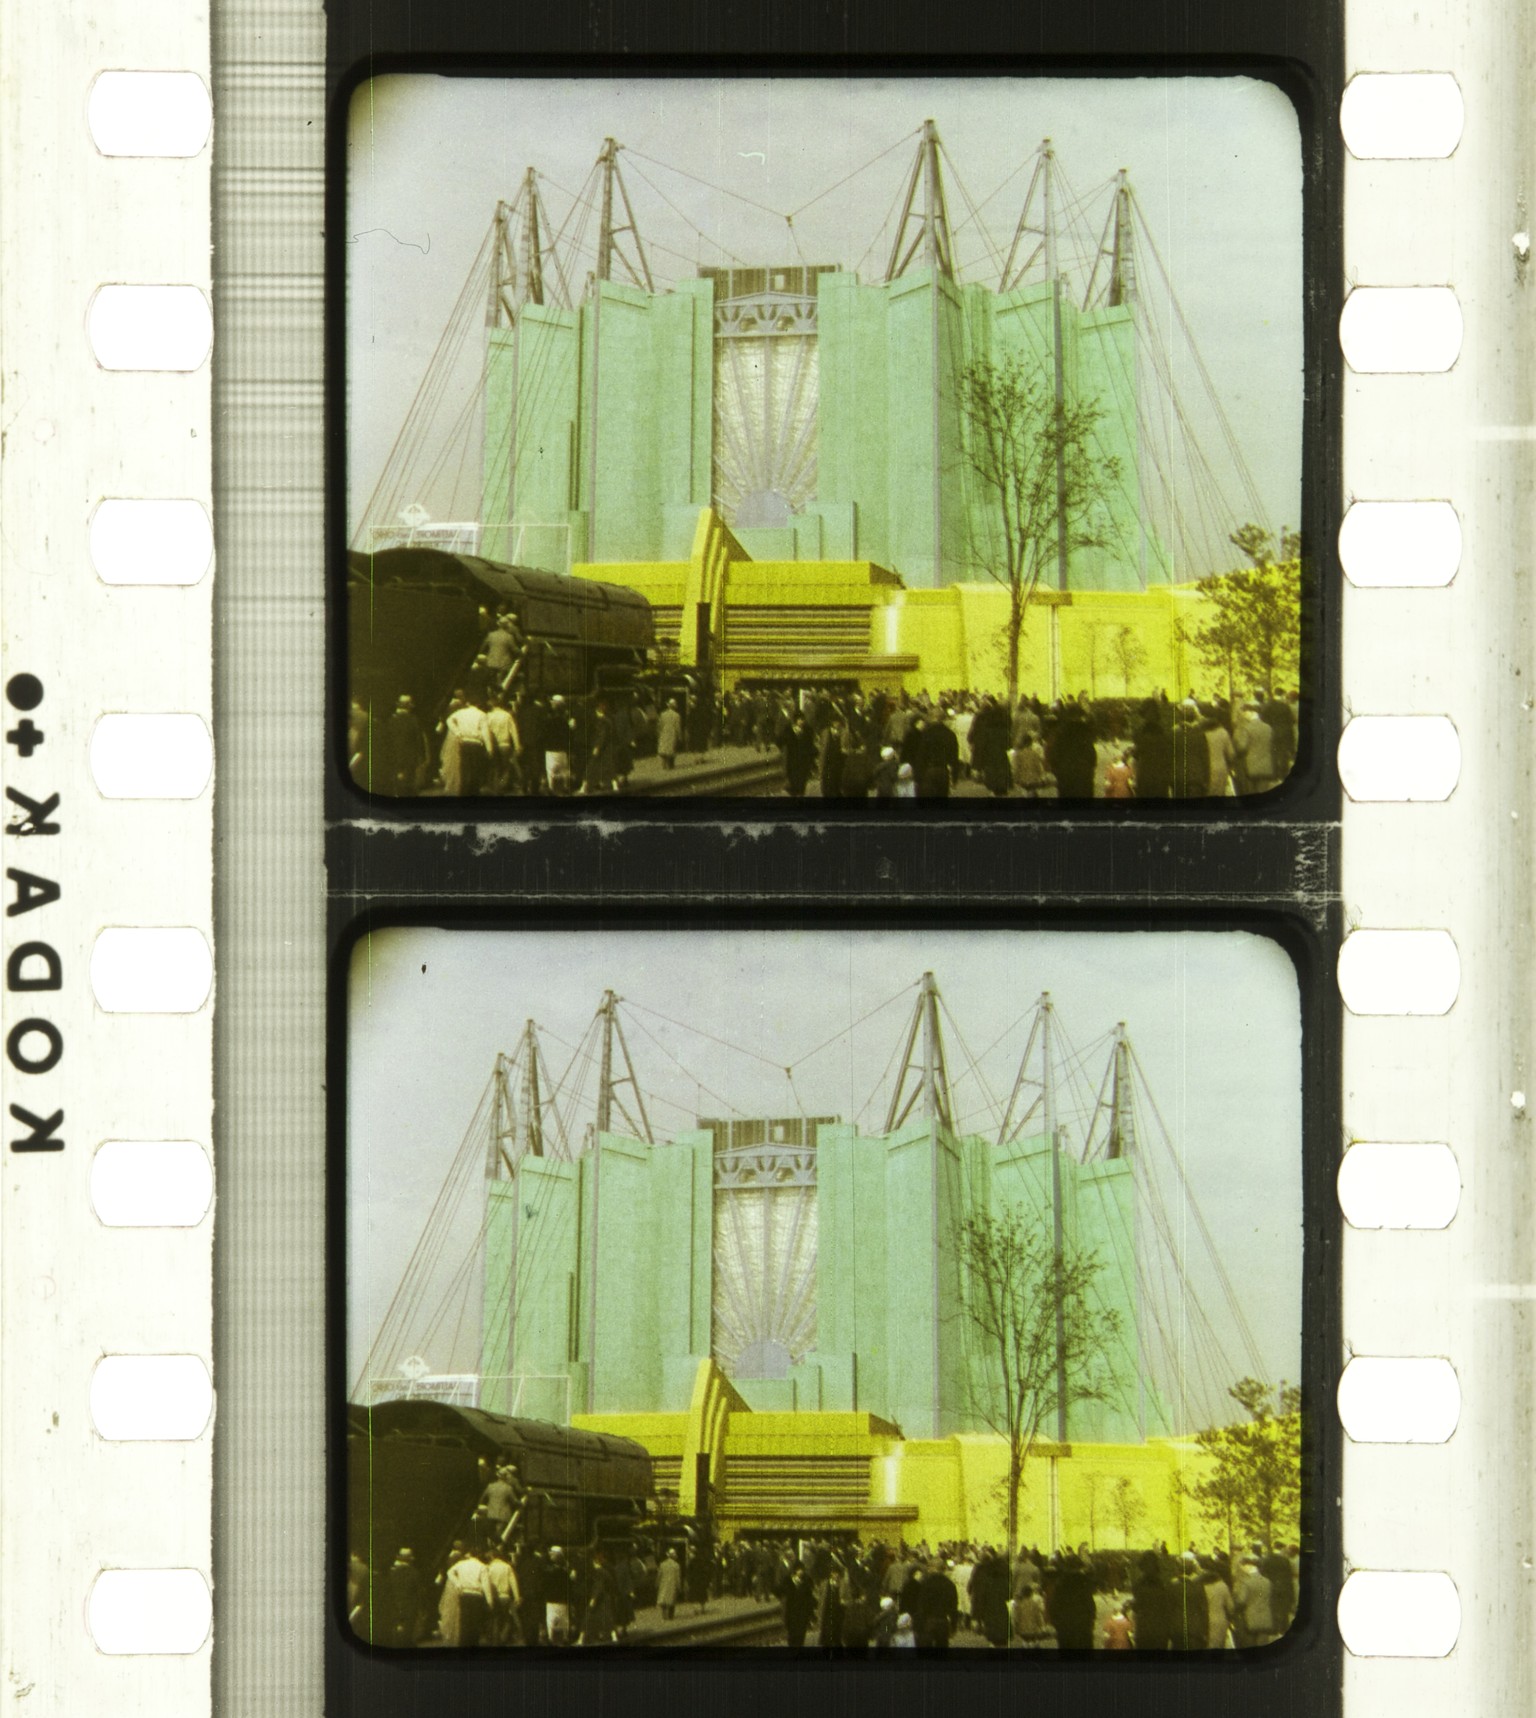 Kein Schiff, aber ein Ausschnitt aus einem Film von 1933/34 über die Weltausstellung in Chicago.